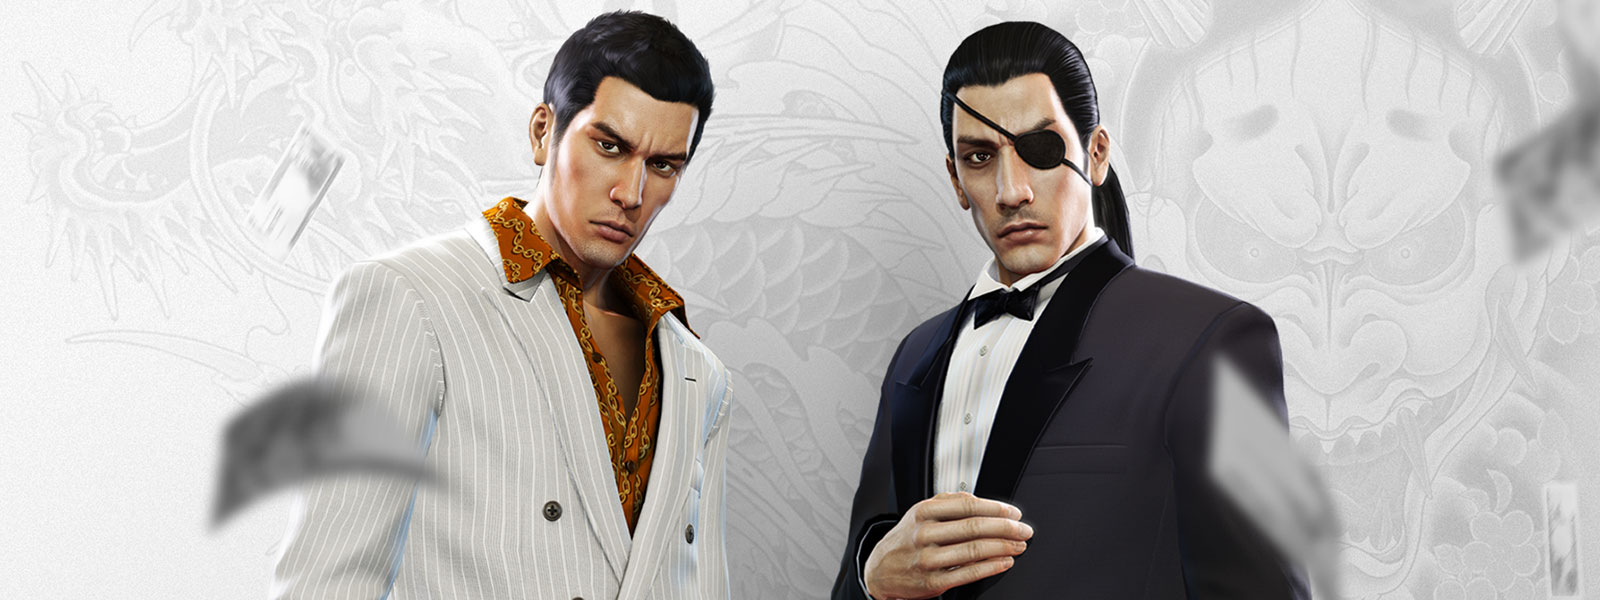 Deux personnages Yakuza en costumes élégants regardent l’argent tomber autour d’eux, avec un arrière-plan de tatouage de dragon blanc et gris